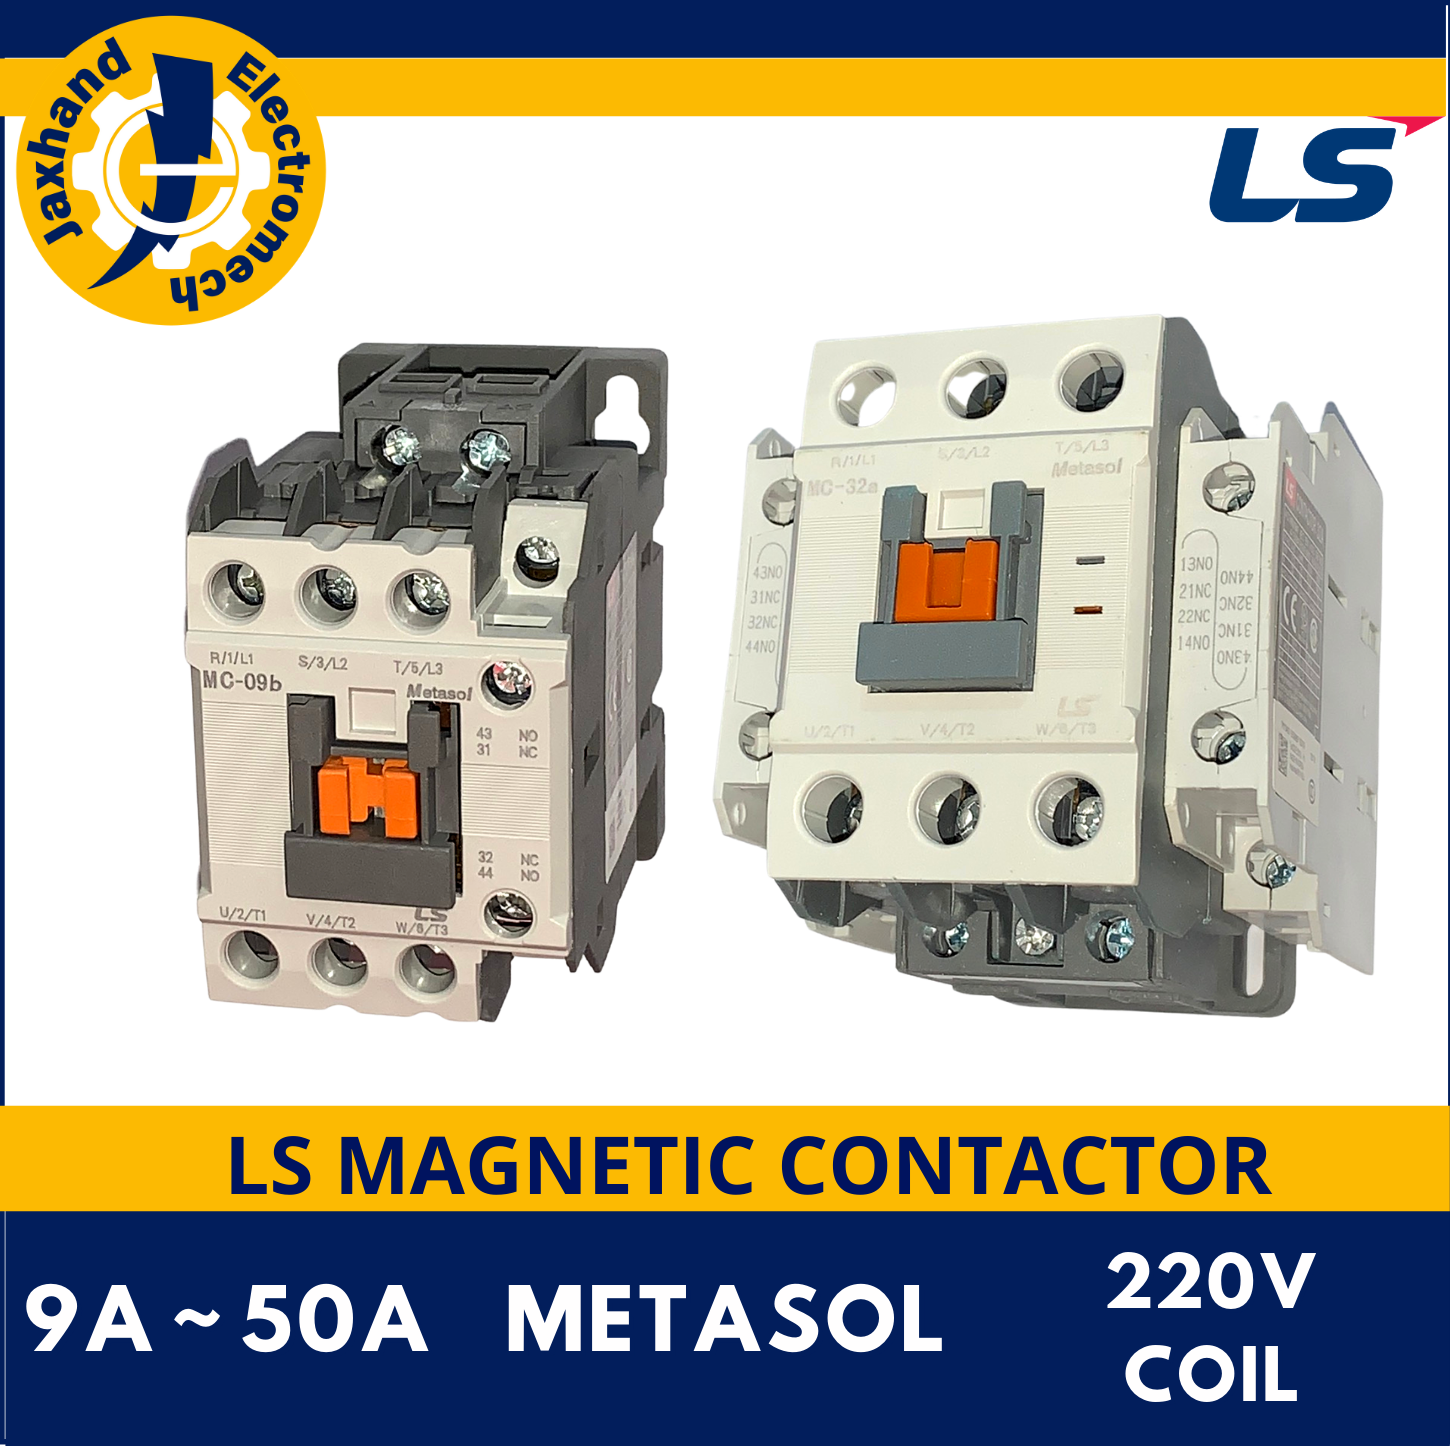 Ls Magnetic Contactor 9a 50a 220vac Coil Metasol Magnetic